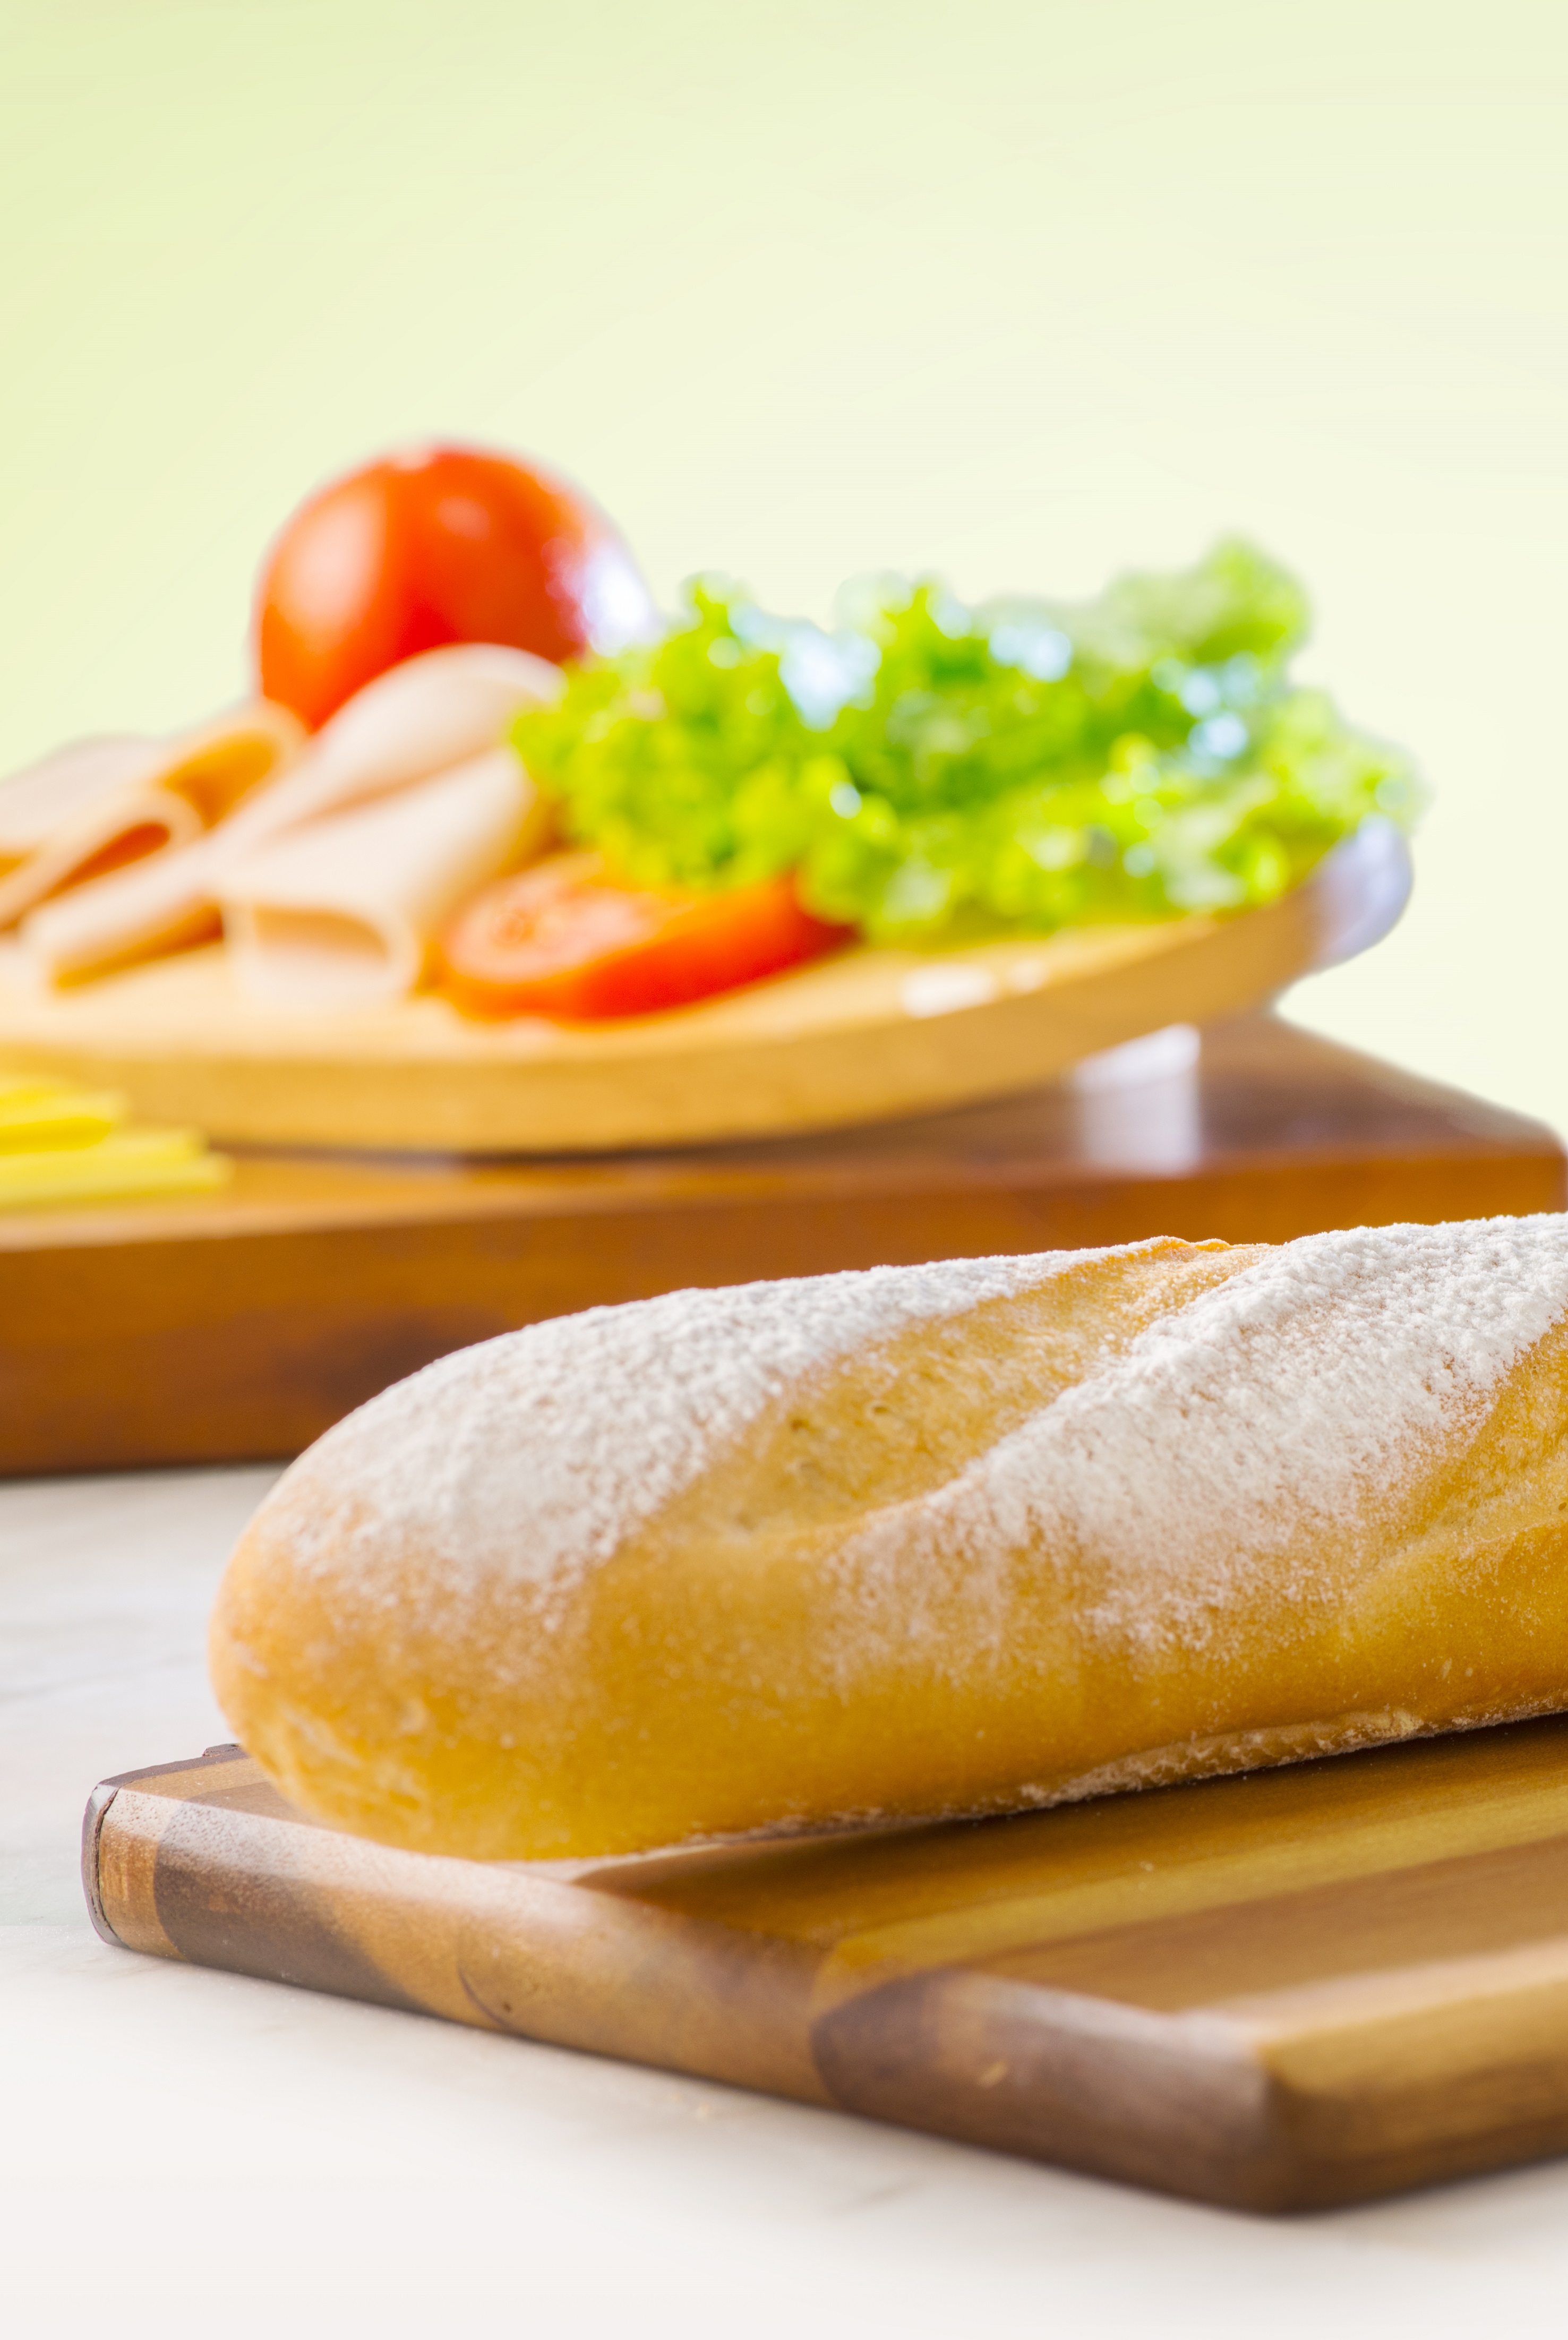 Musmanni lanza pan libre de grasa, colesterol y azúcar: el Melcochón Cero